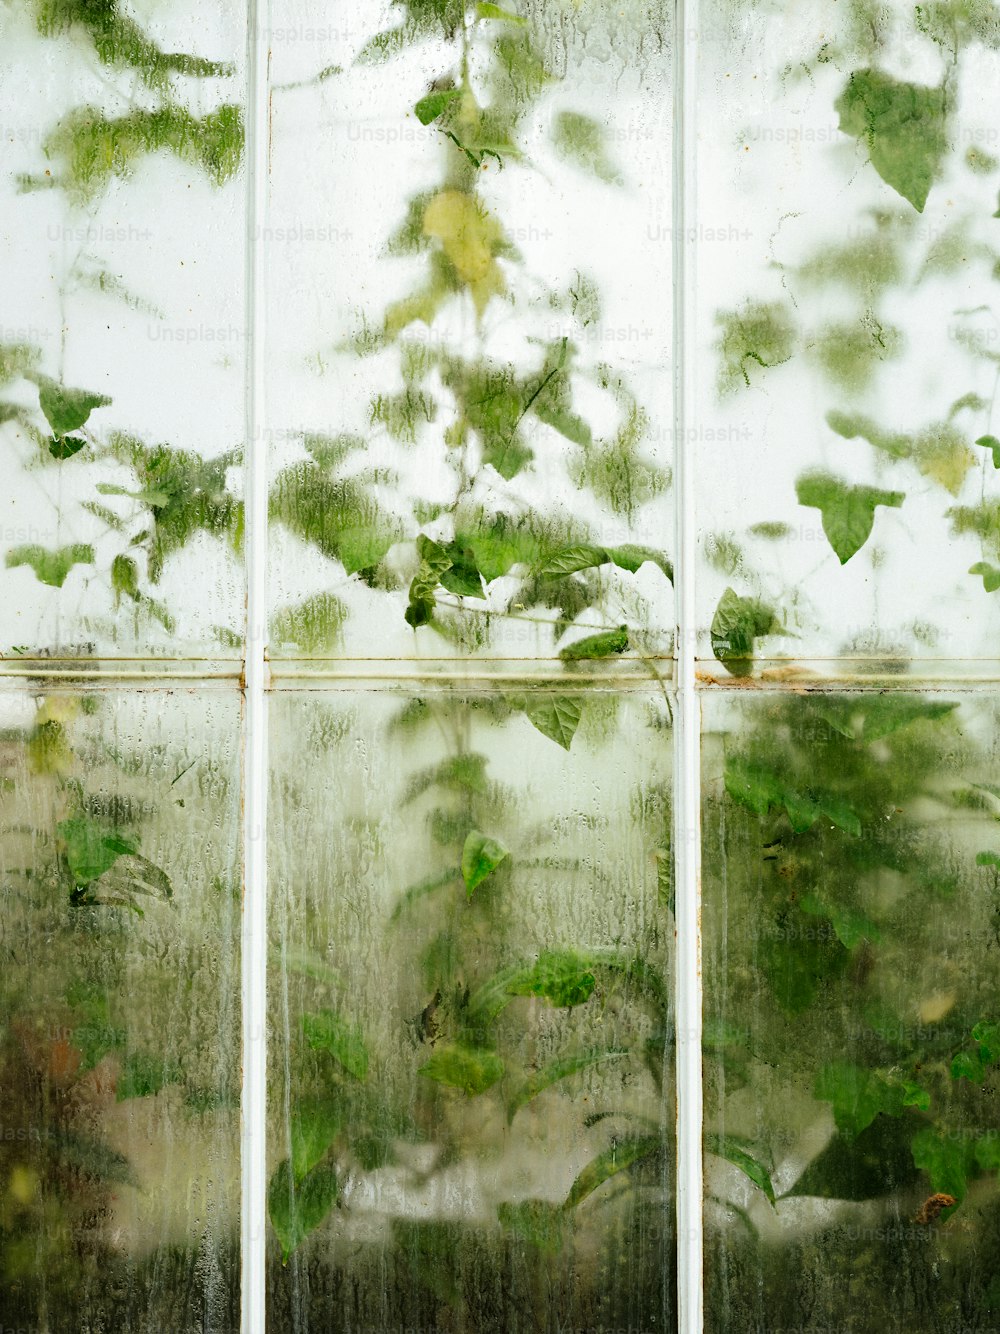 たくさんの緑の植物が生えている窓